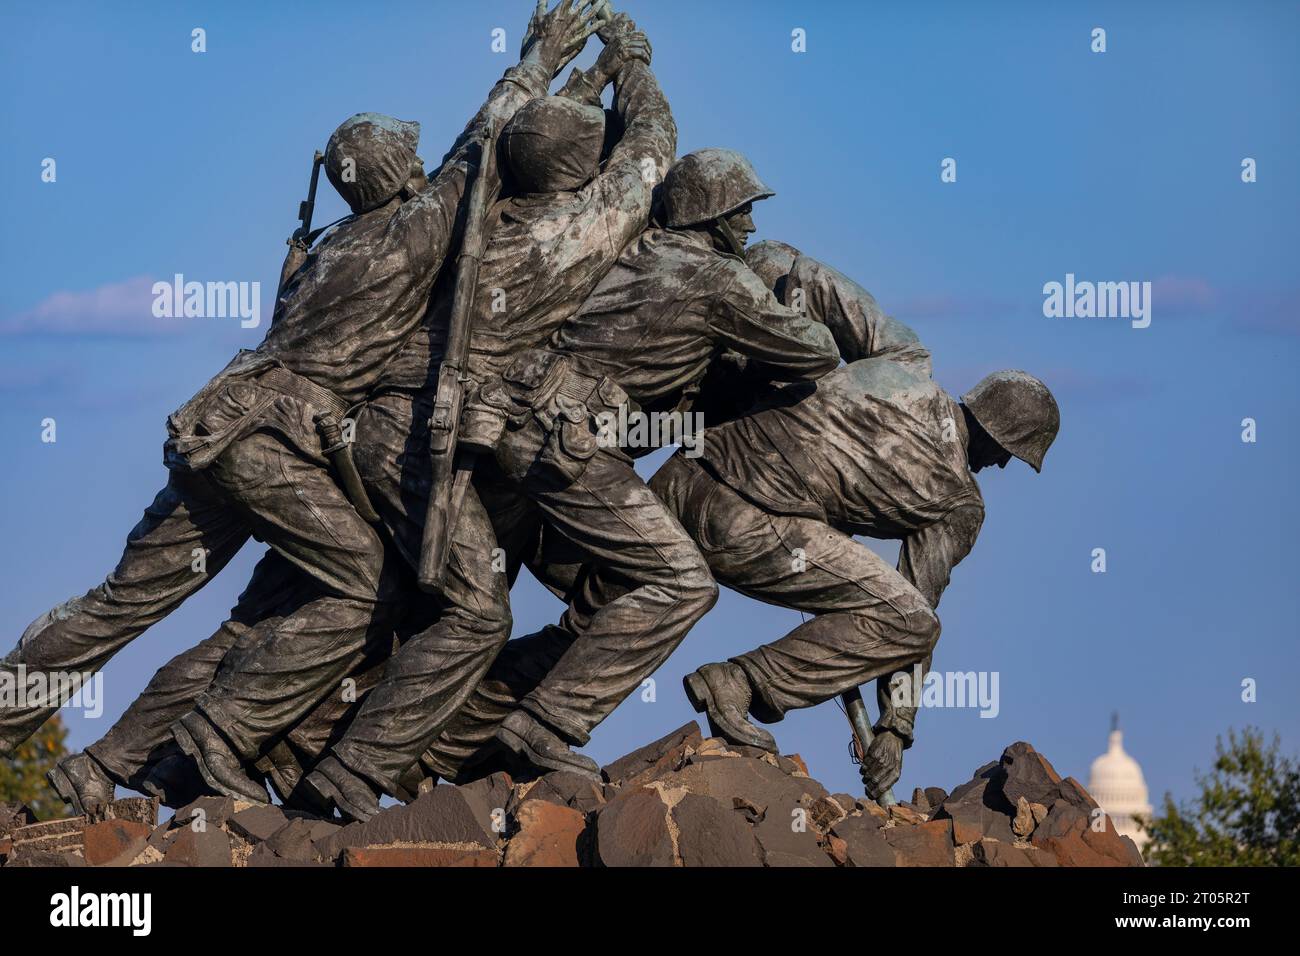 ROSSLYN, ARLINGTON, VIRGINIA, USA - dettaglio del monumento commemorativo di guerra del corpo dei Marine degli Stati Uniti Iwo Jima. Foto Stock